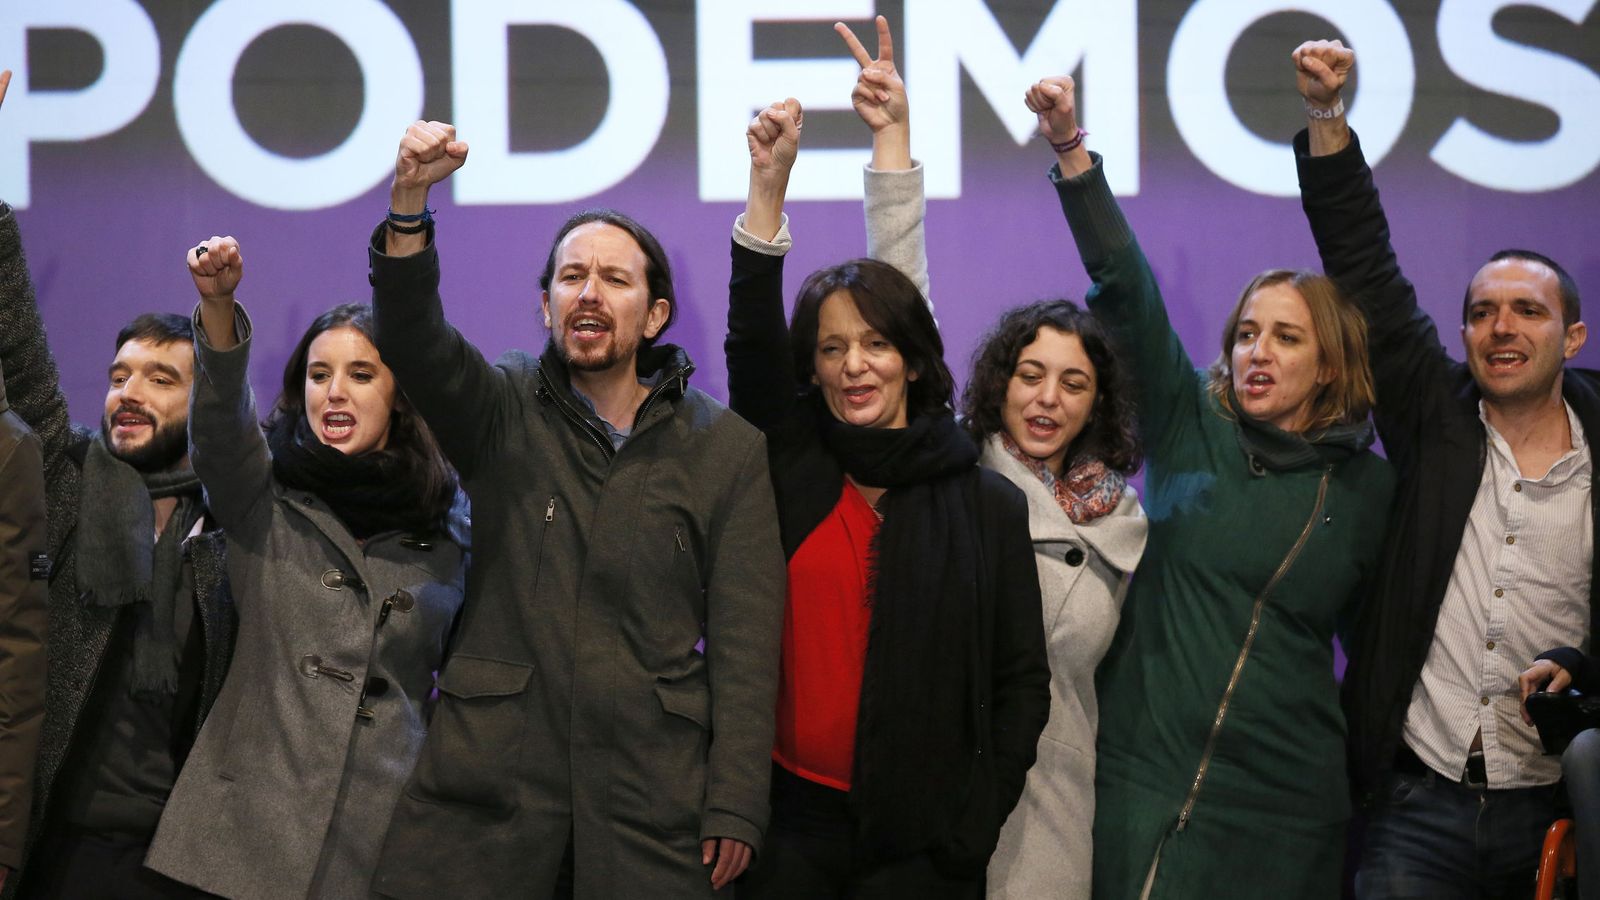 Foto: Podemos celebra sus resultados en Madrid el 20-D. (EFE)